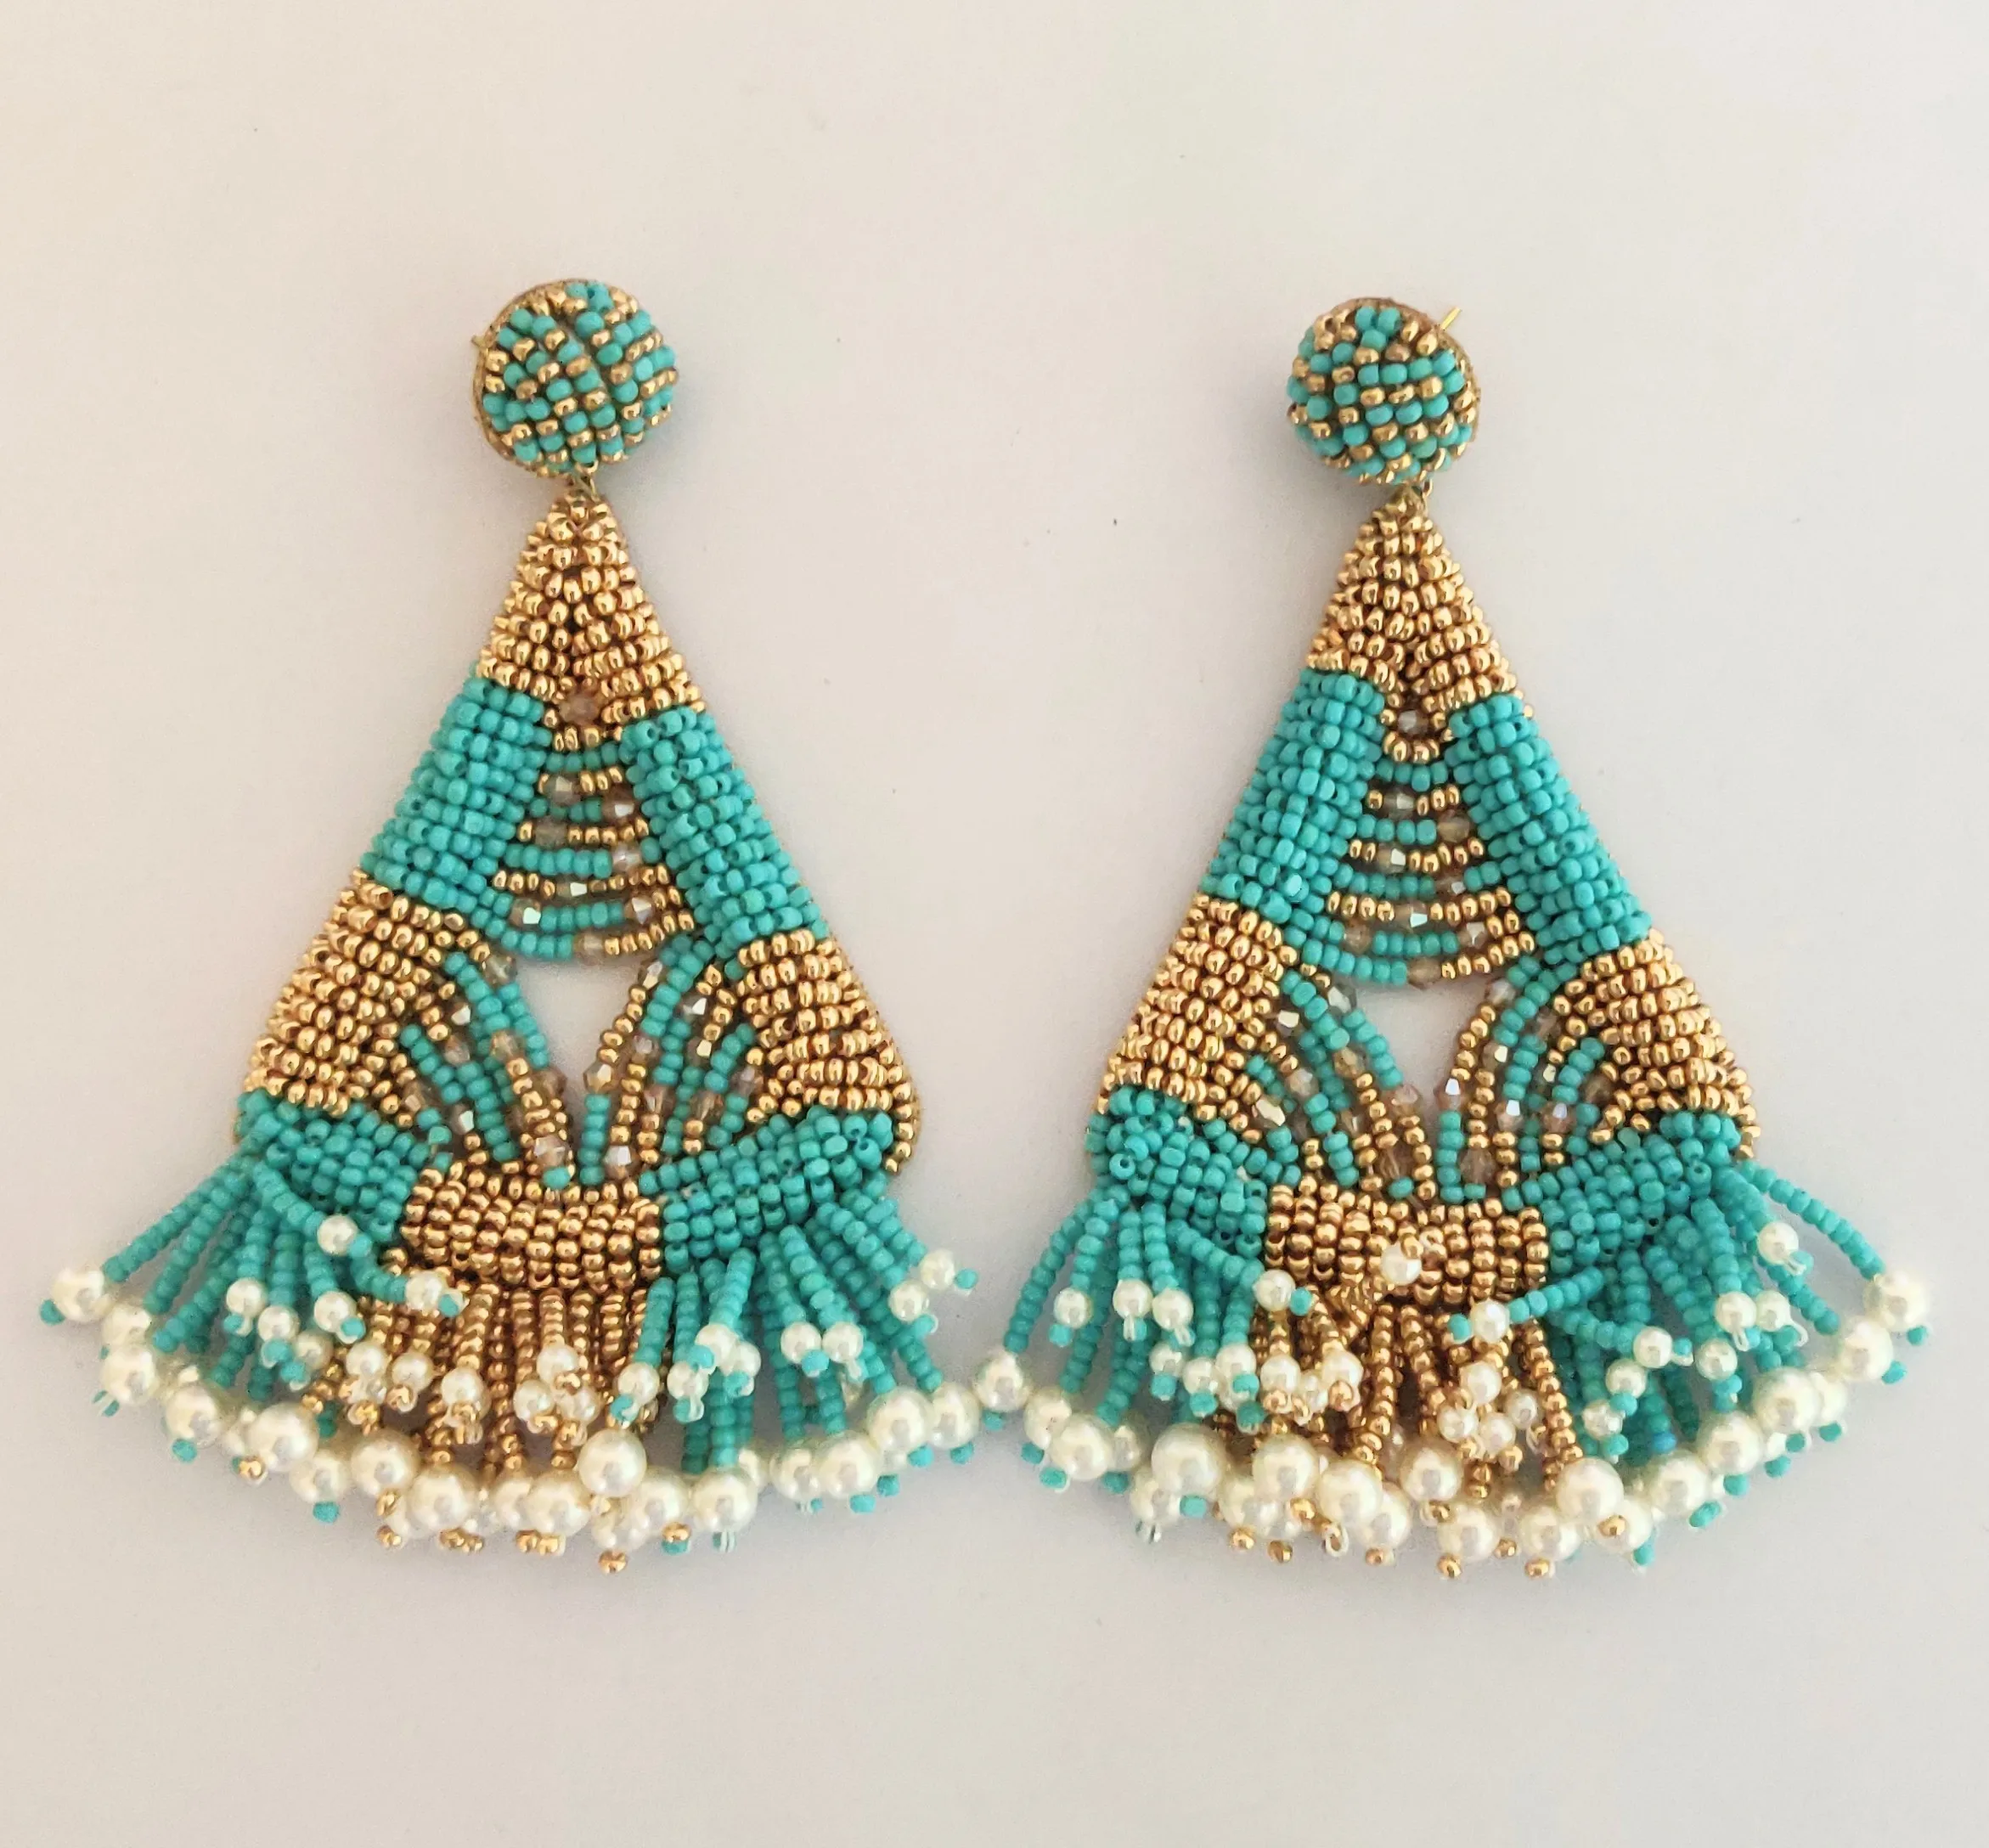 Earrings Turquoise Jewellery Earrings Chandelier Earrings Bead embroidery jewelry Earrings Turquoise Chandelier Turquoise Jewelry Earrings  chandelier 